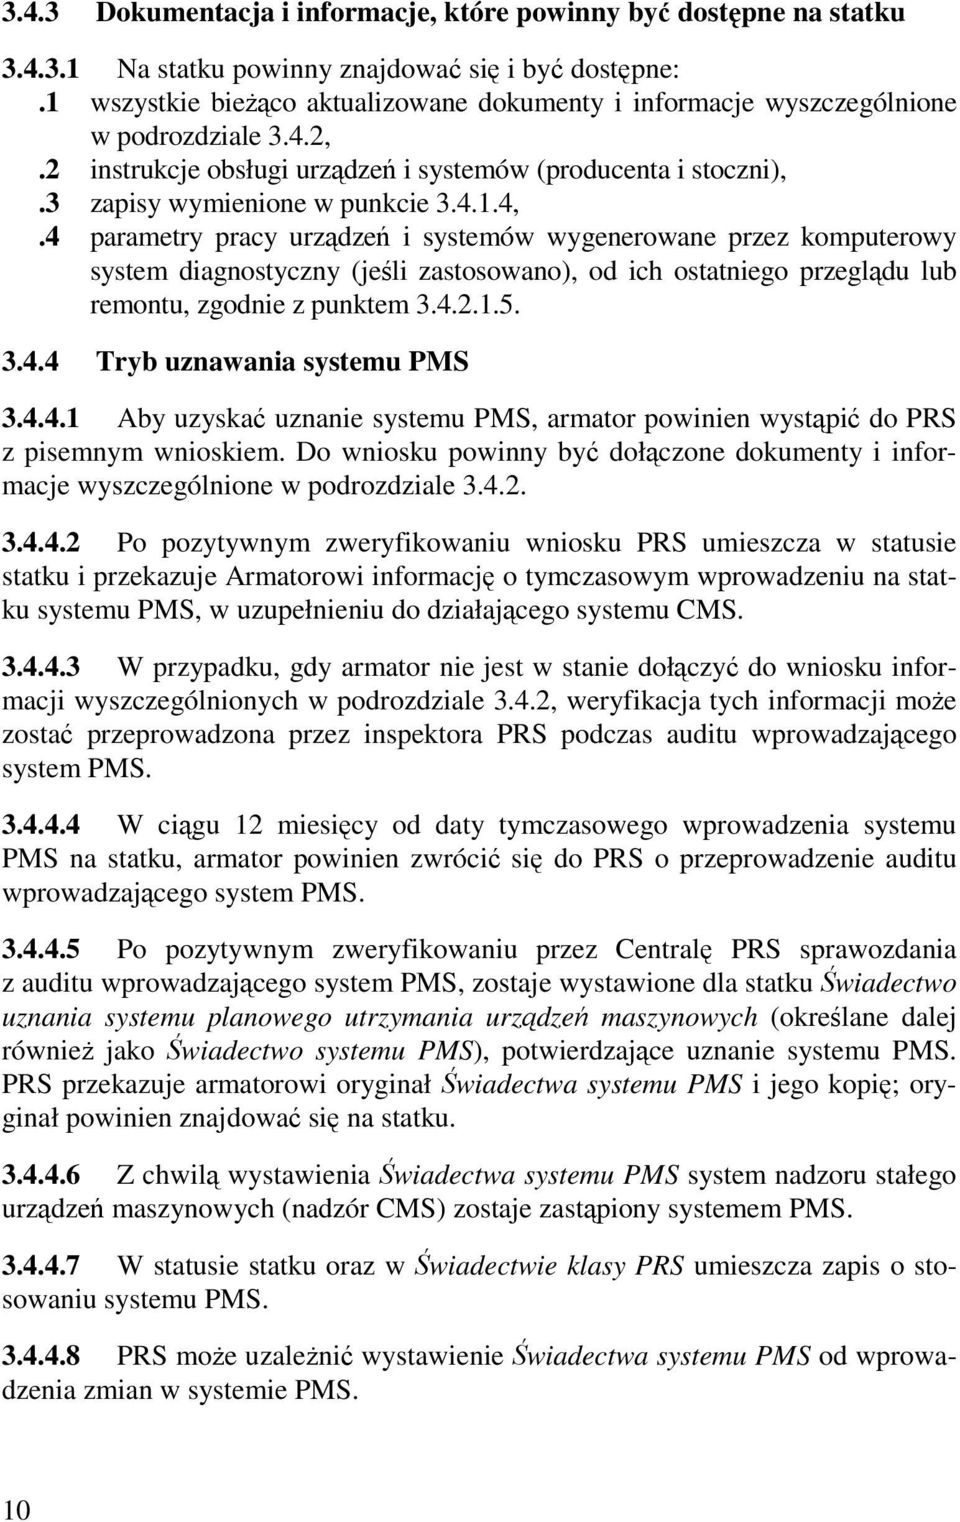 4 parametry pracy urządzeń i systemów wygenerowane przez komputerowy system diagnostyczny (jeśli zastosowano), od ich ostatniego przeglądu lub remontu, zgodnie z punktem 3.4.2.1.5. 3.4.4 Tryb uznawania systemu PMS 3.